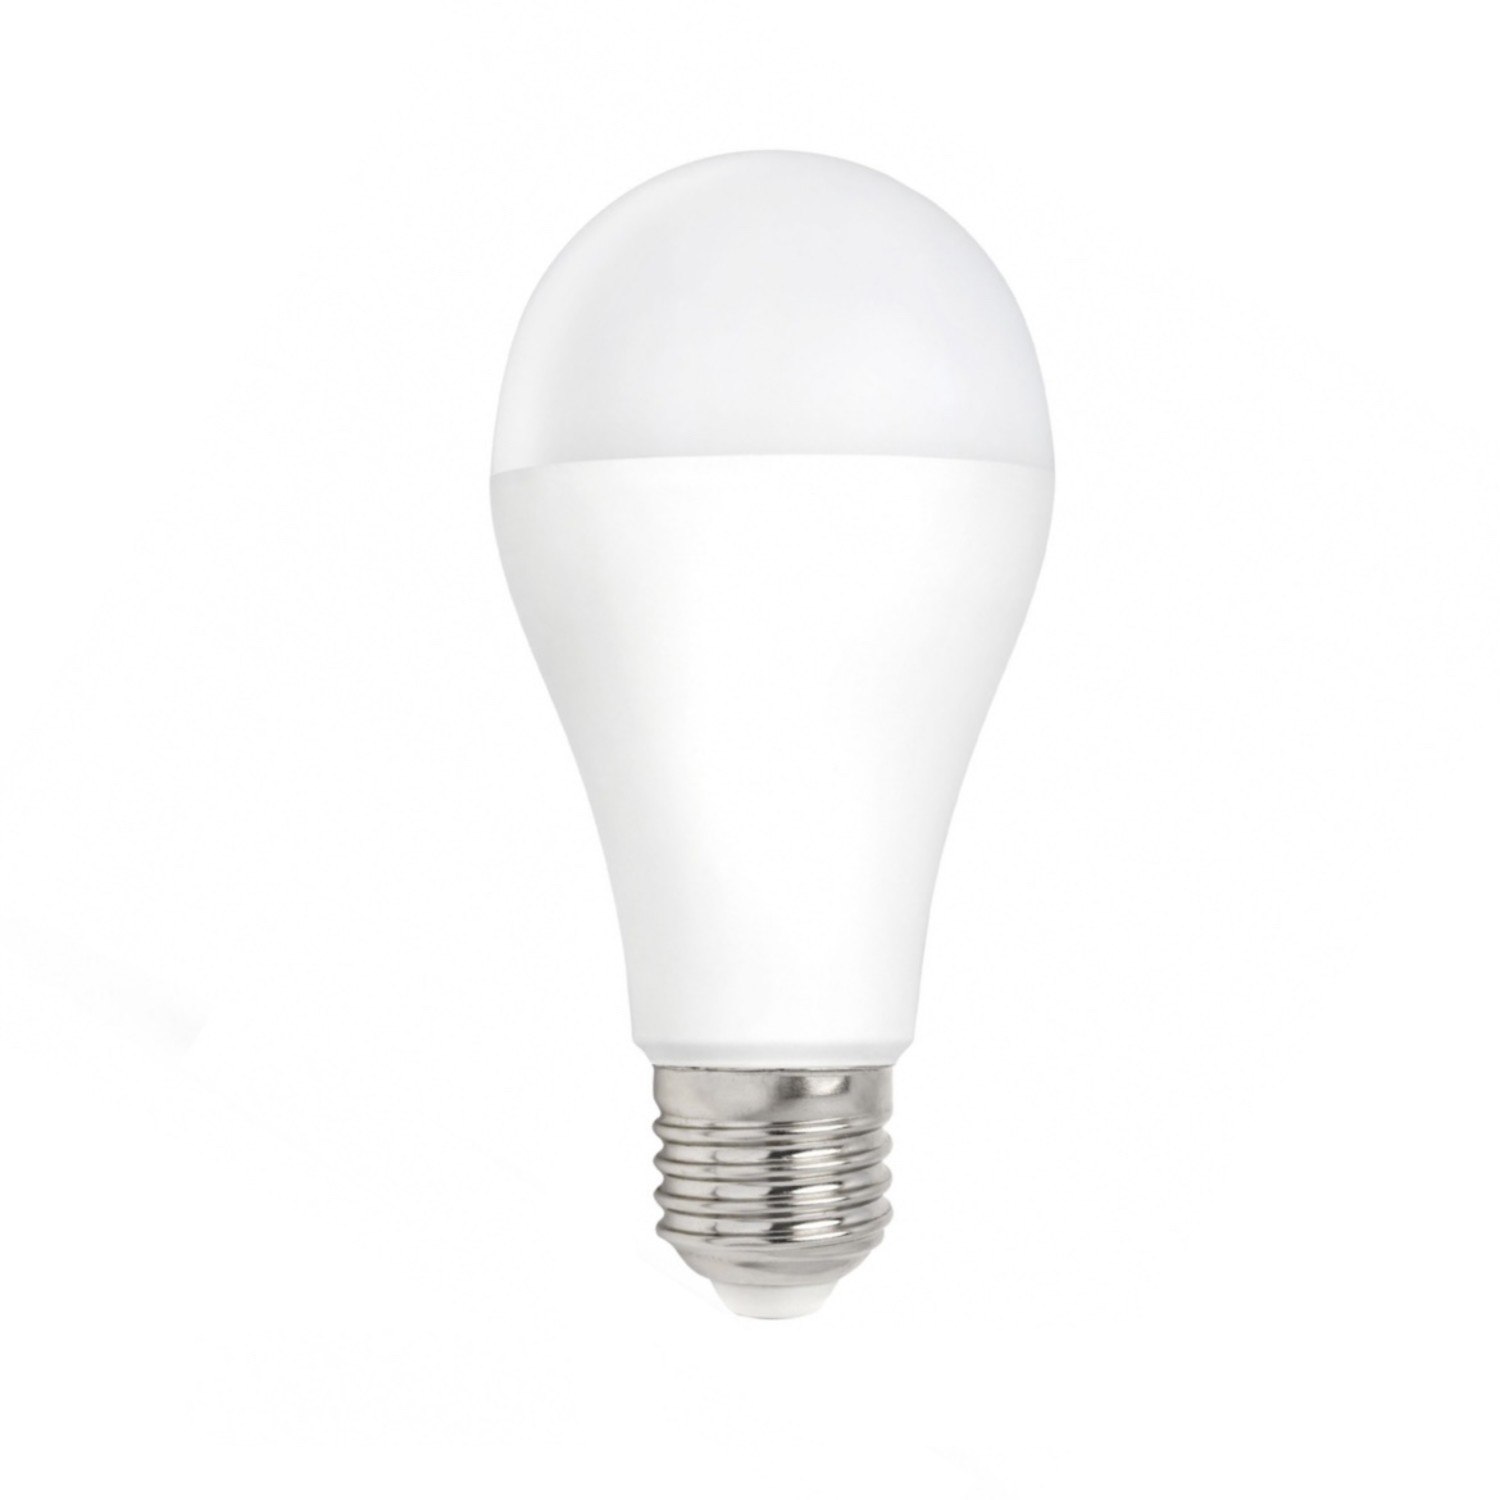 Uitgestorven toonhoogte voor mij LED Lamp - E27 fitting - 15W vervangt 101W - Helder wit licht 4000K -  Ledlichtdiscounter.nl